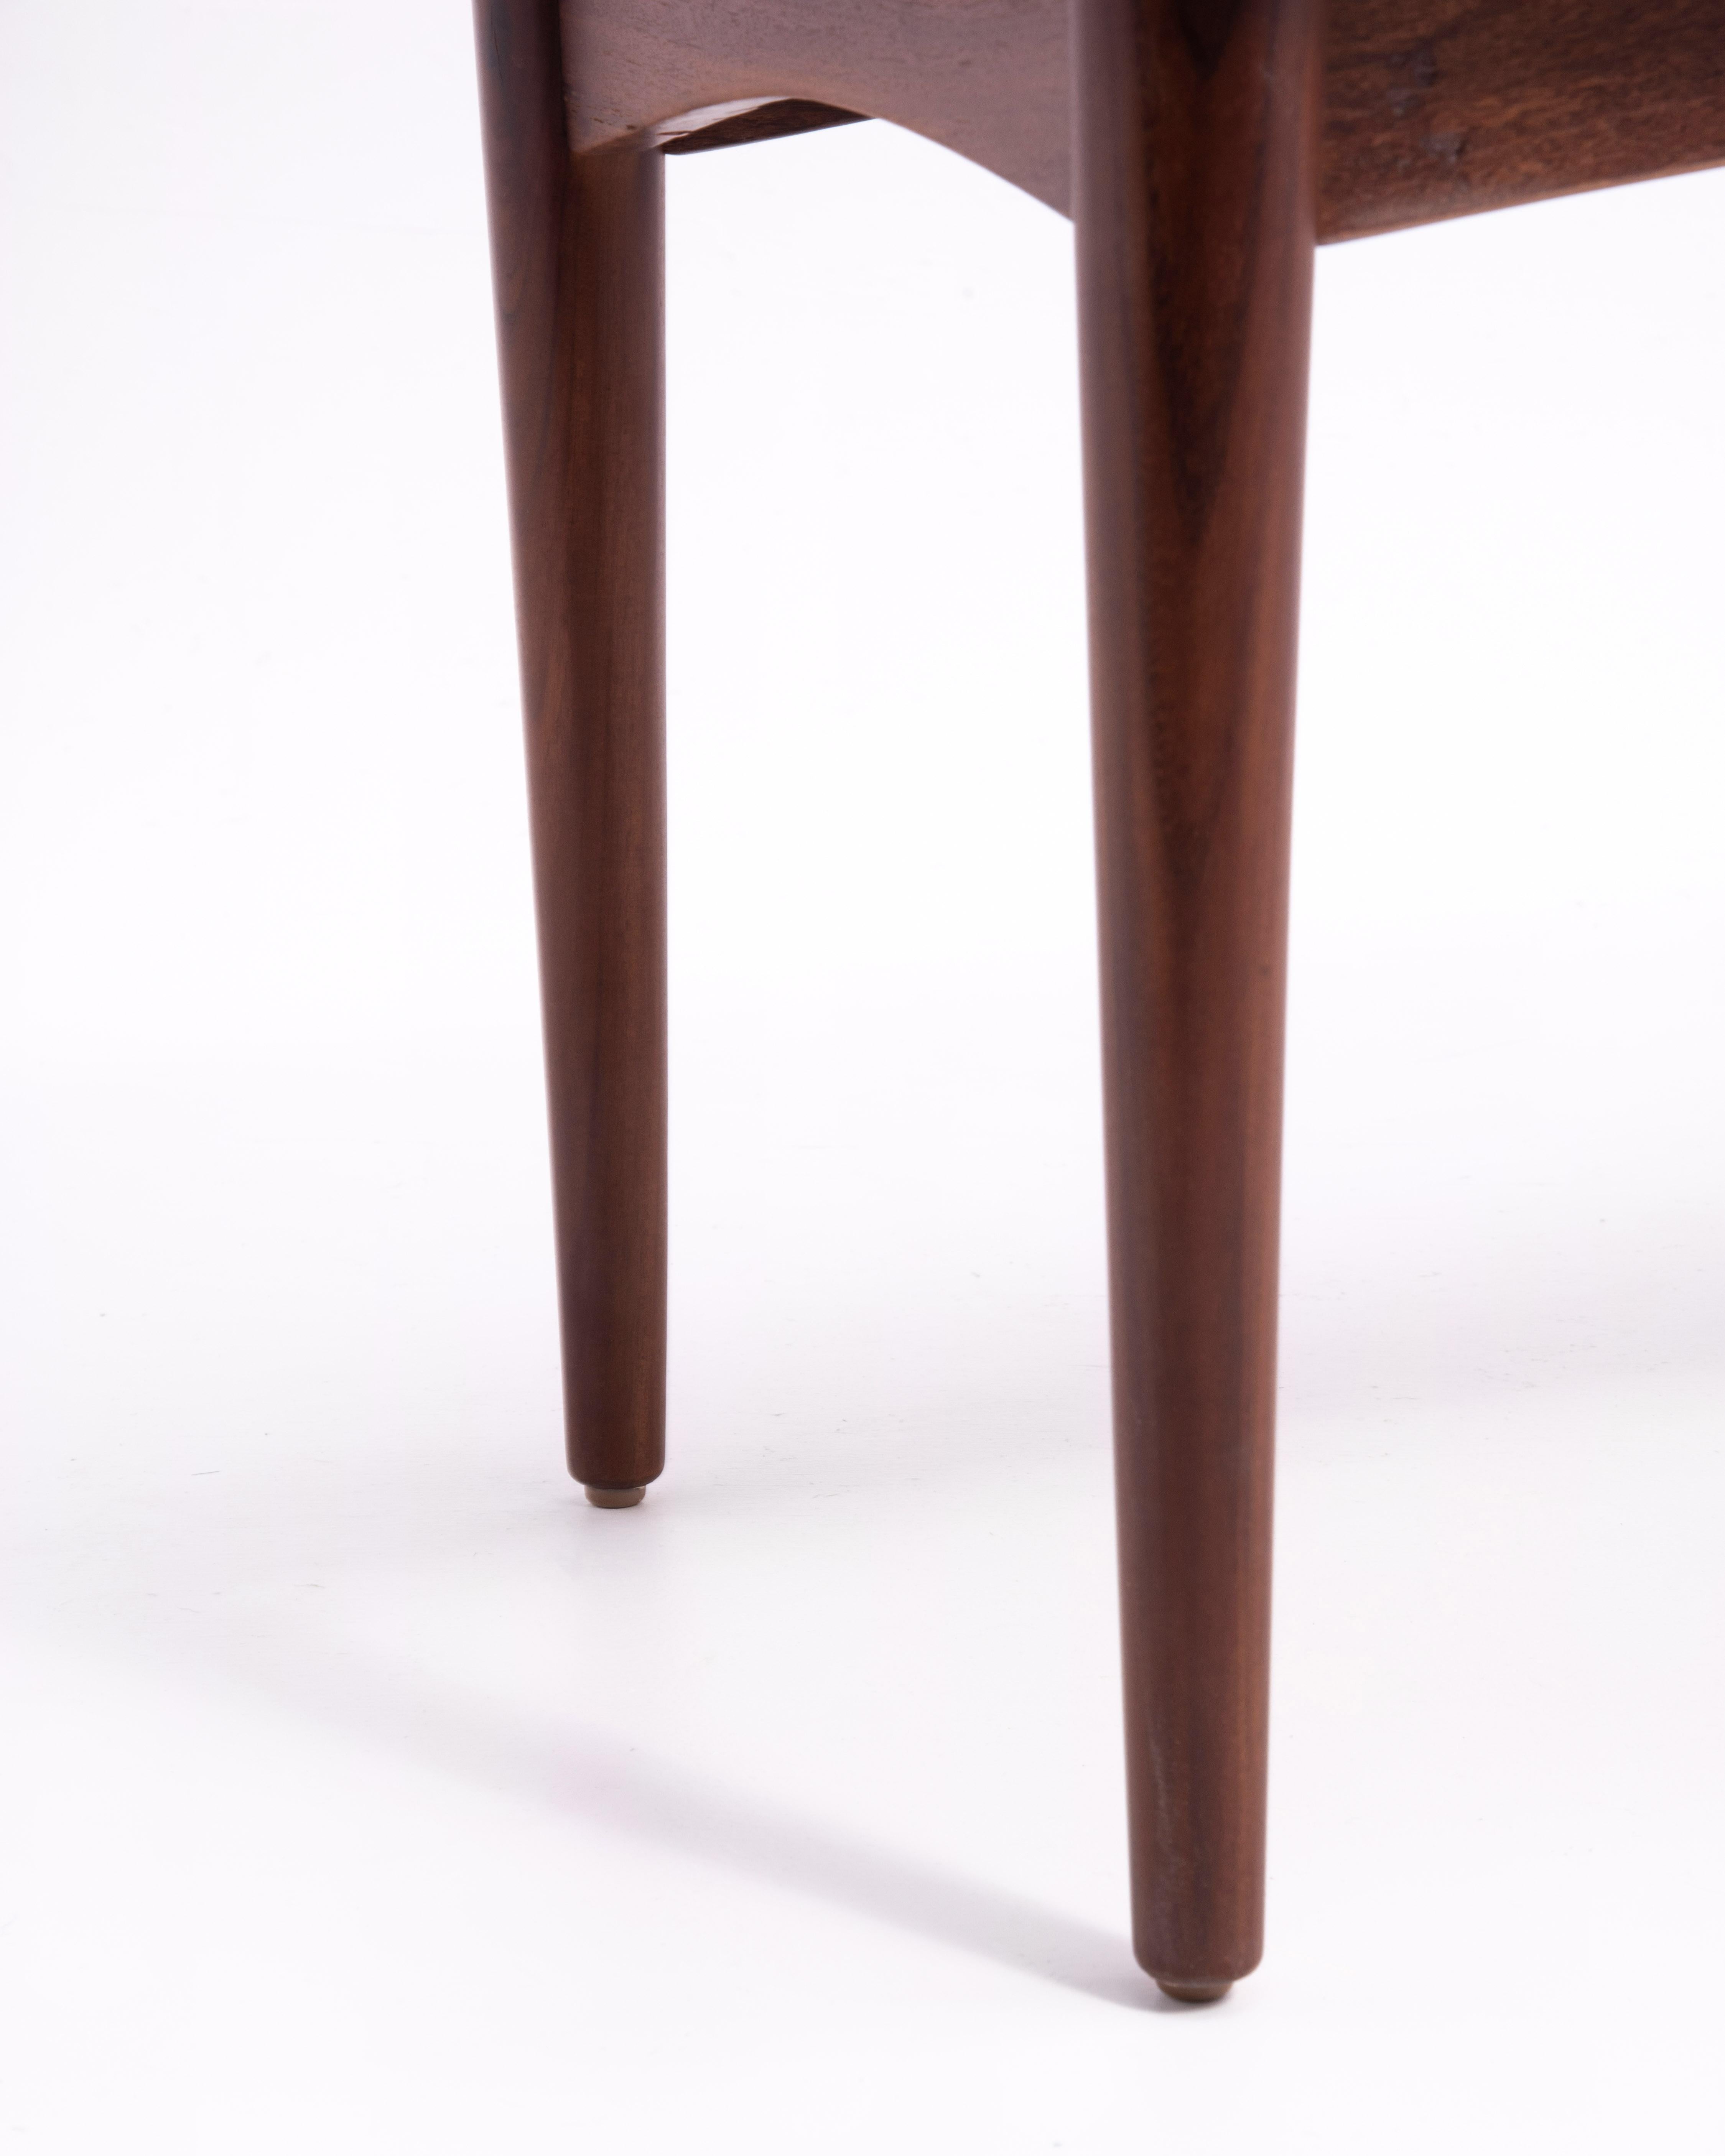 Danish Modern Teak Dowel Leg Side Table After Grete Jalk Marked B. J. 1970s For Sale 10